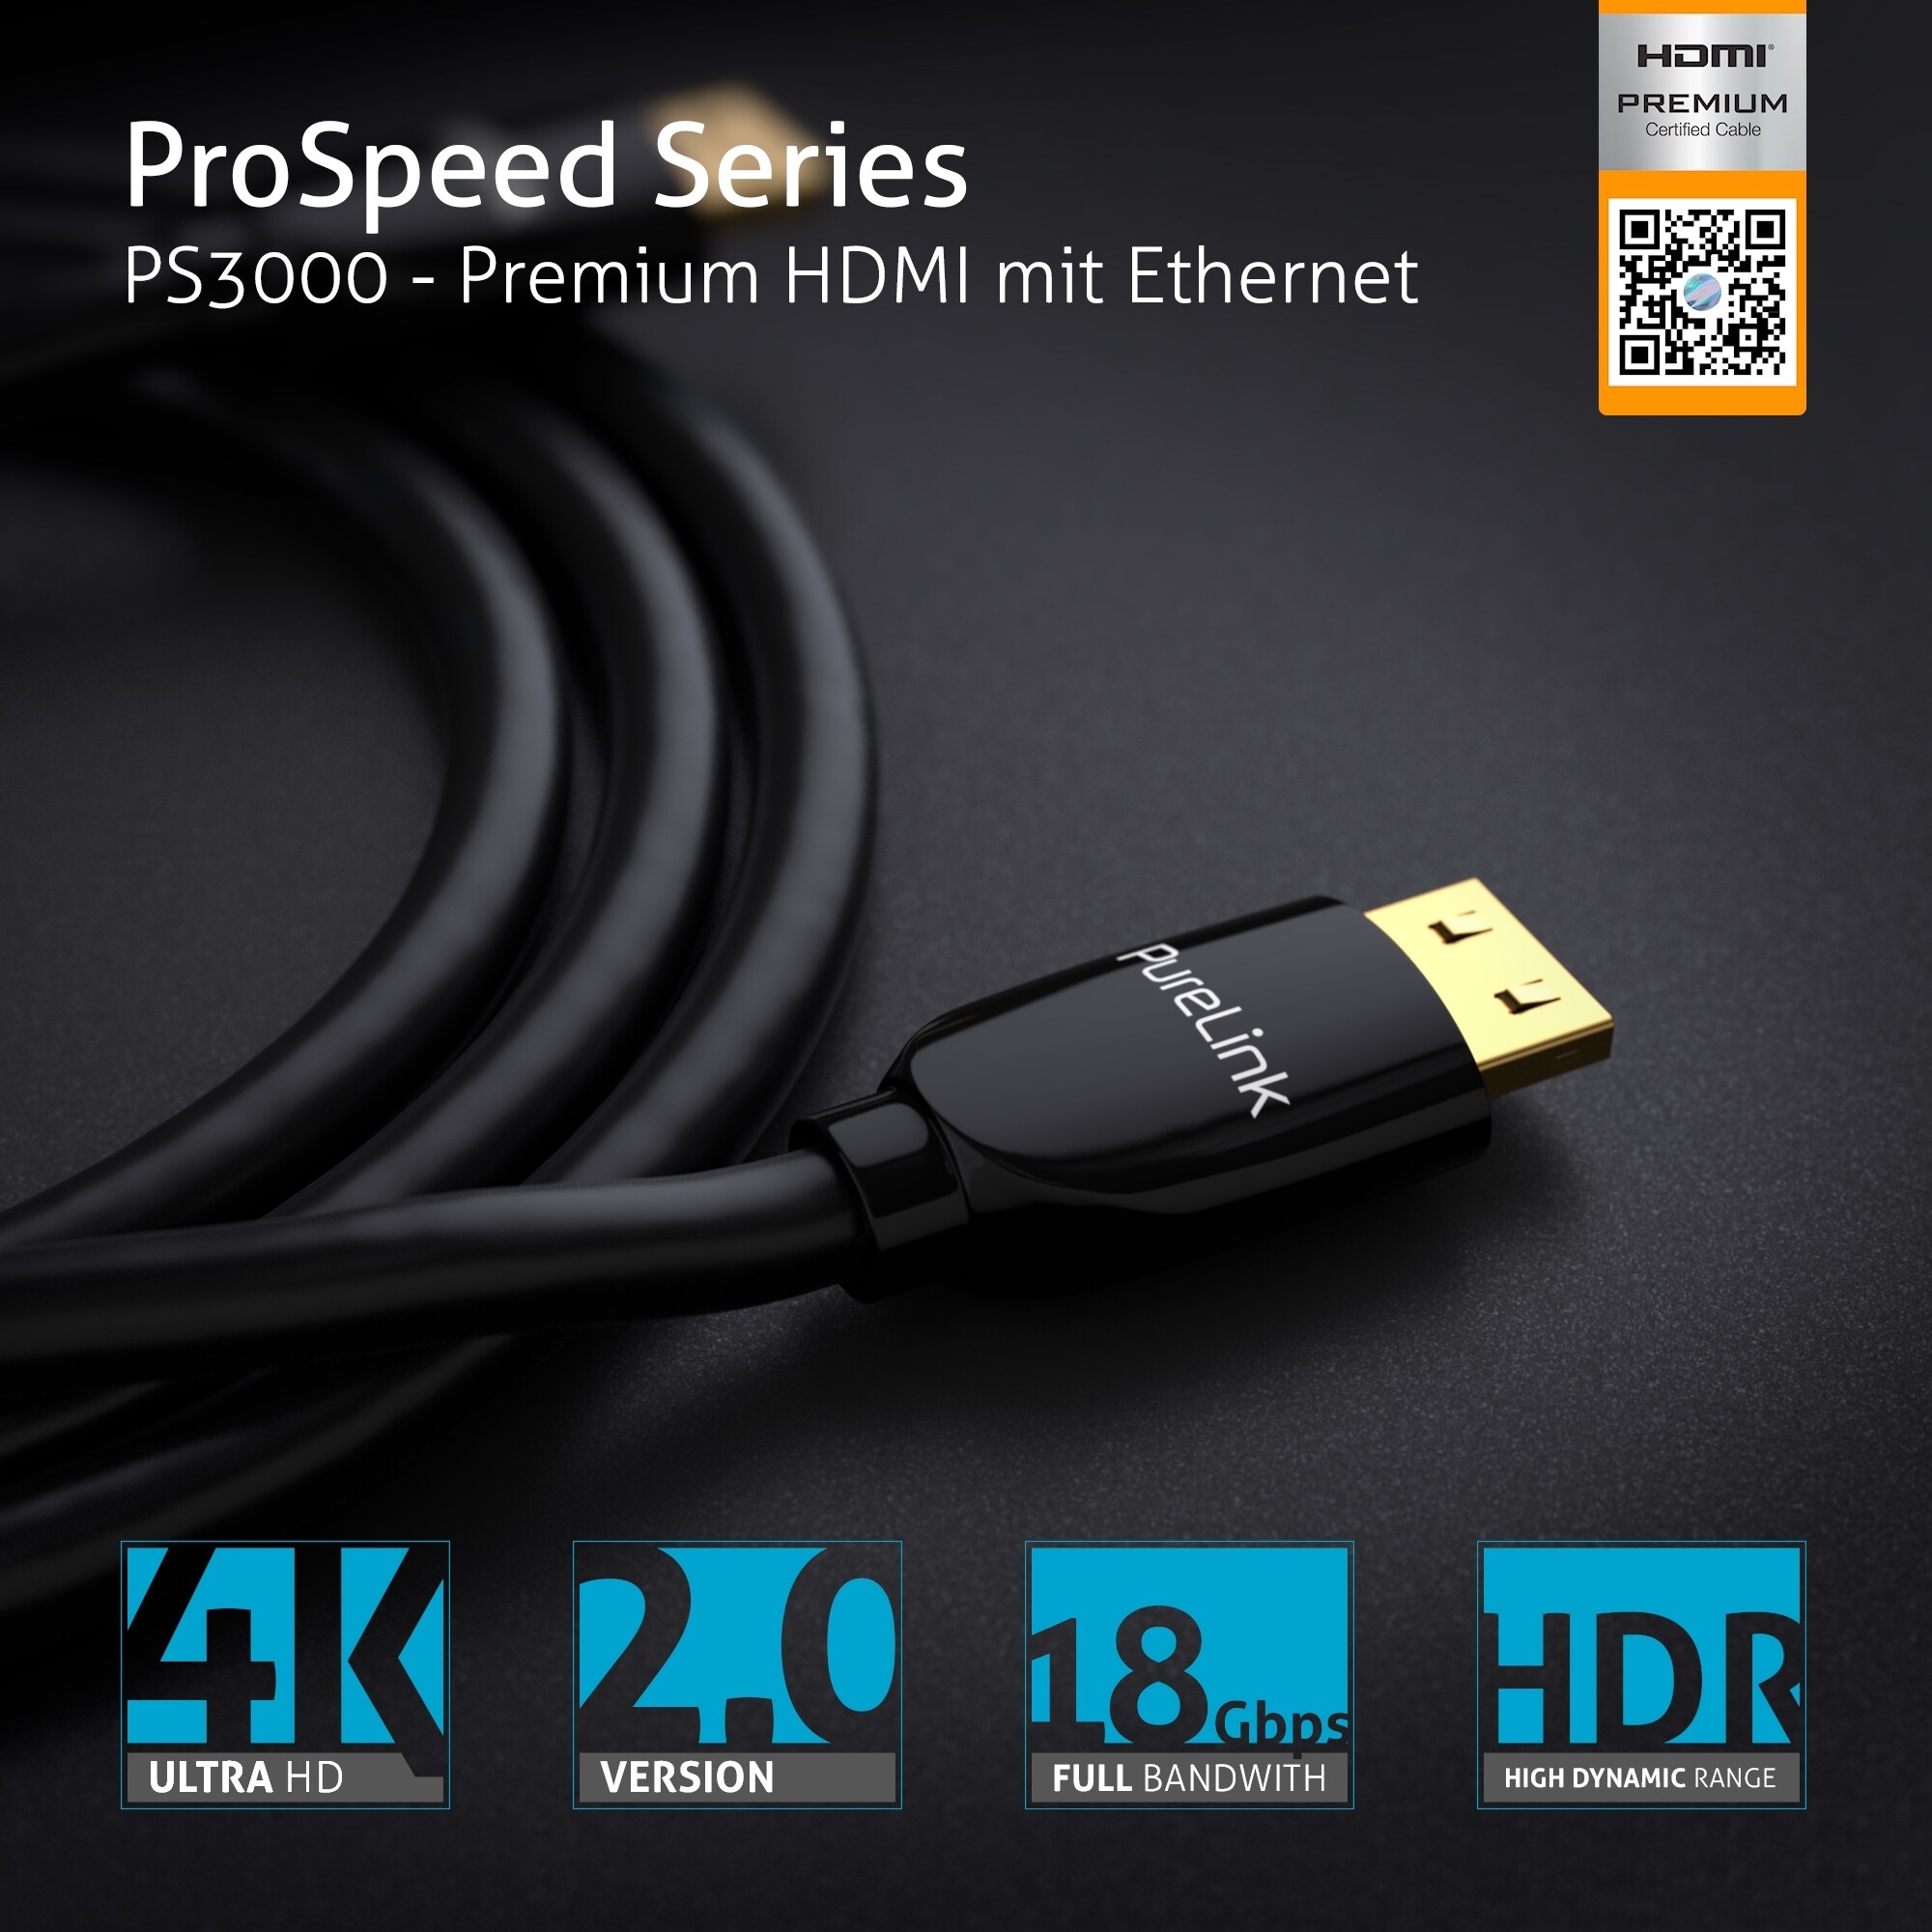 PureLink-PS3000-Premium-Highspeed-HDMI-Kabel-mit-Ethernet-Zertifiziert-3-00m